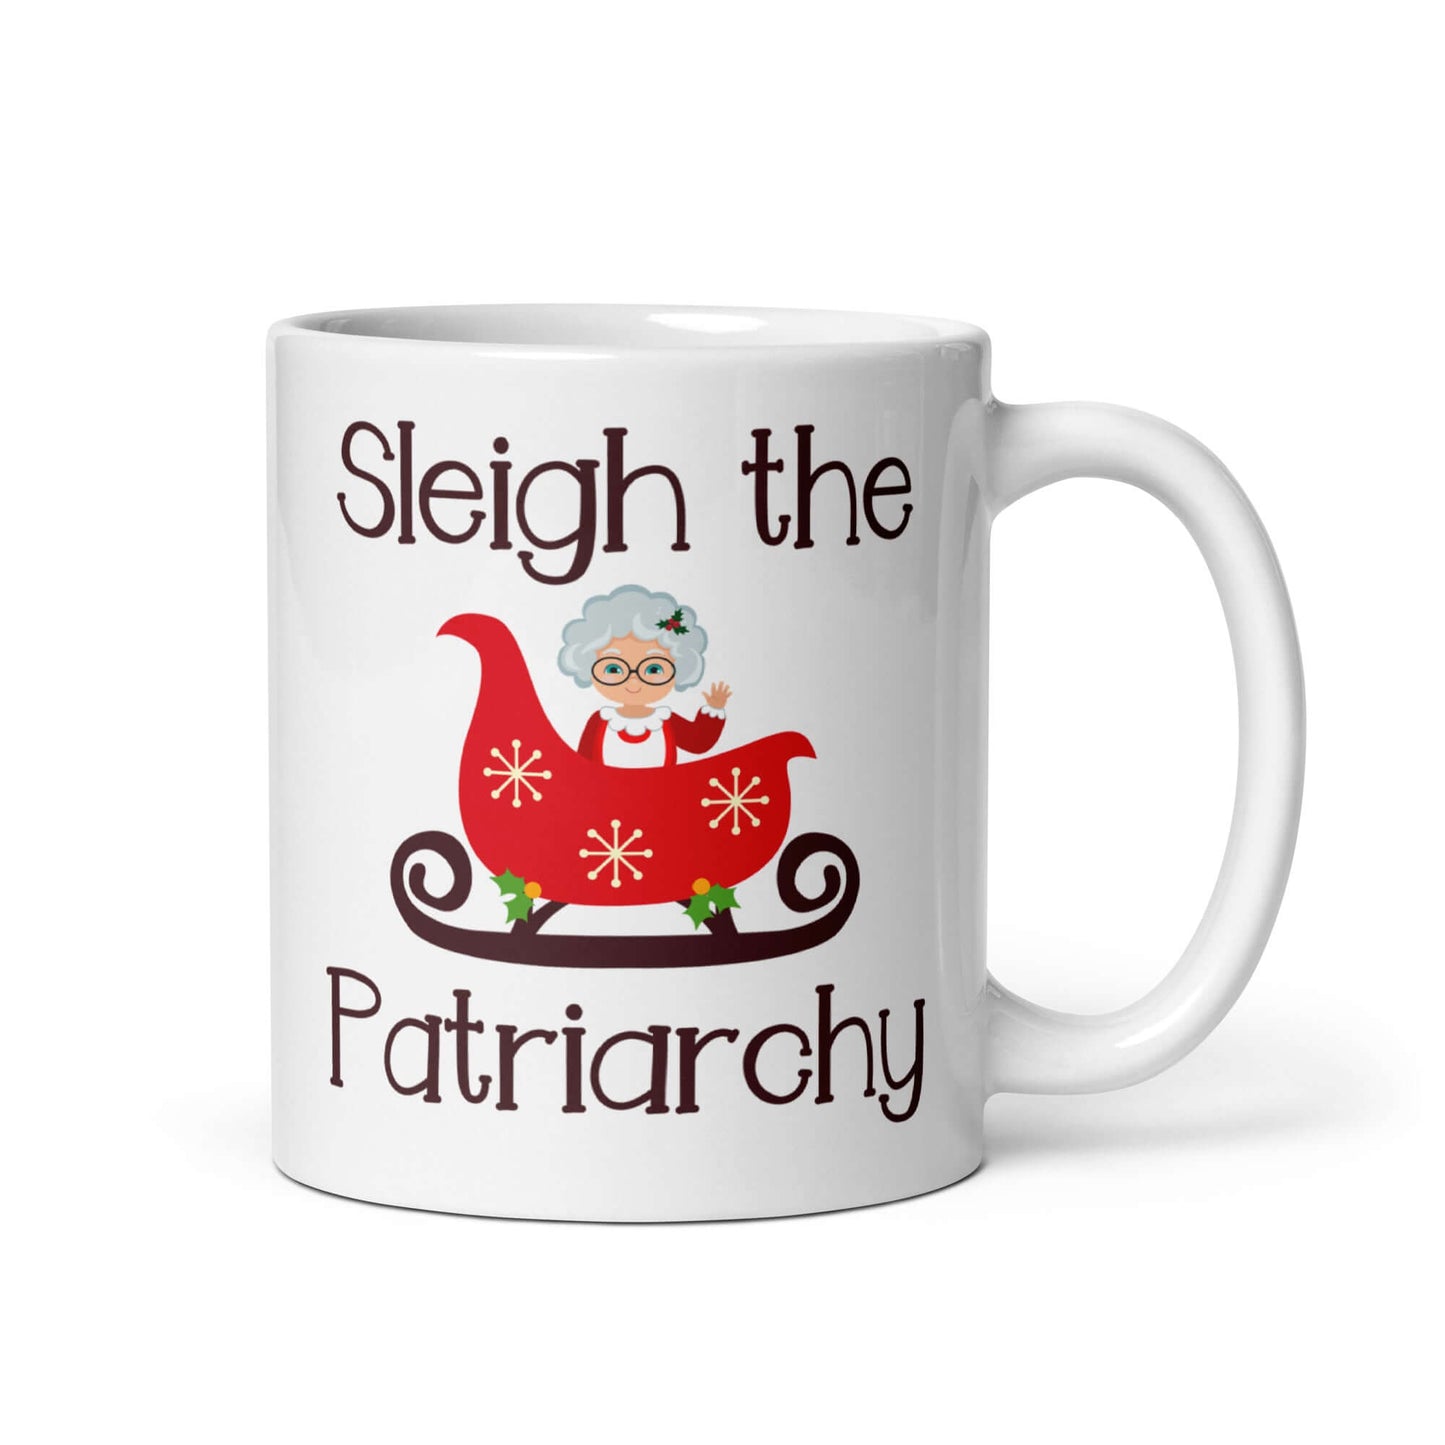 Sleigh the patriarchy ceramic mug